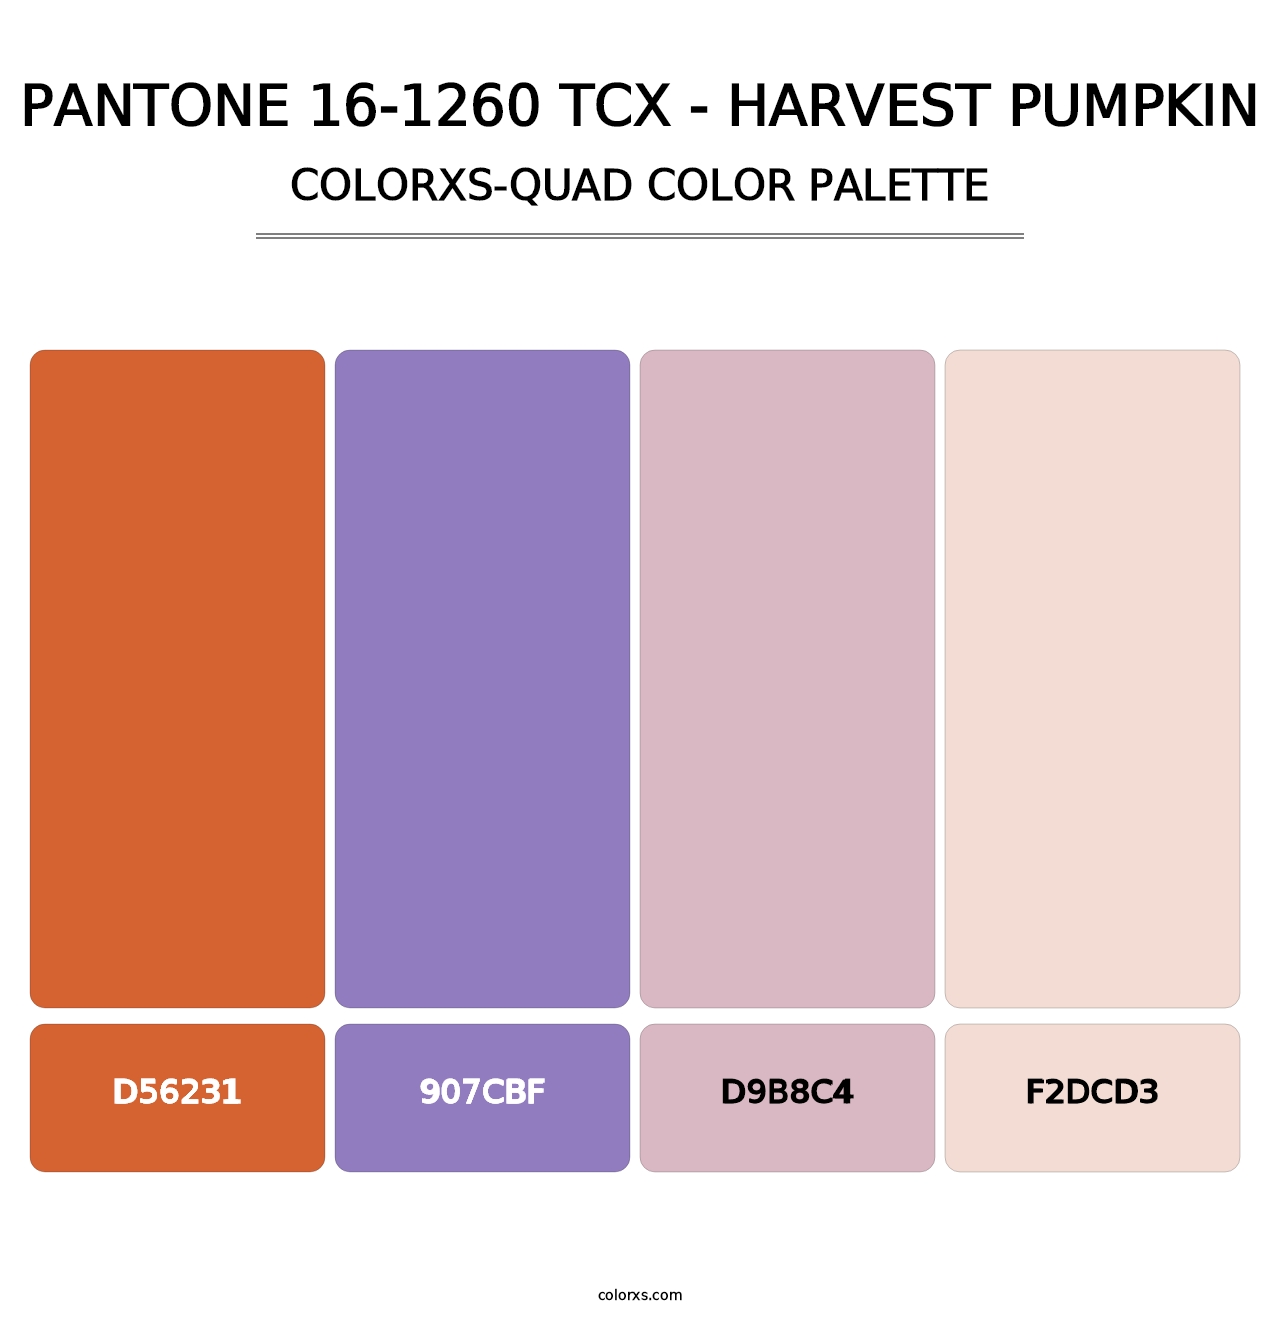 PANTONE 16-1260 TCX - Harvest Pumpkin - Colorxs Quad Palette